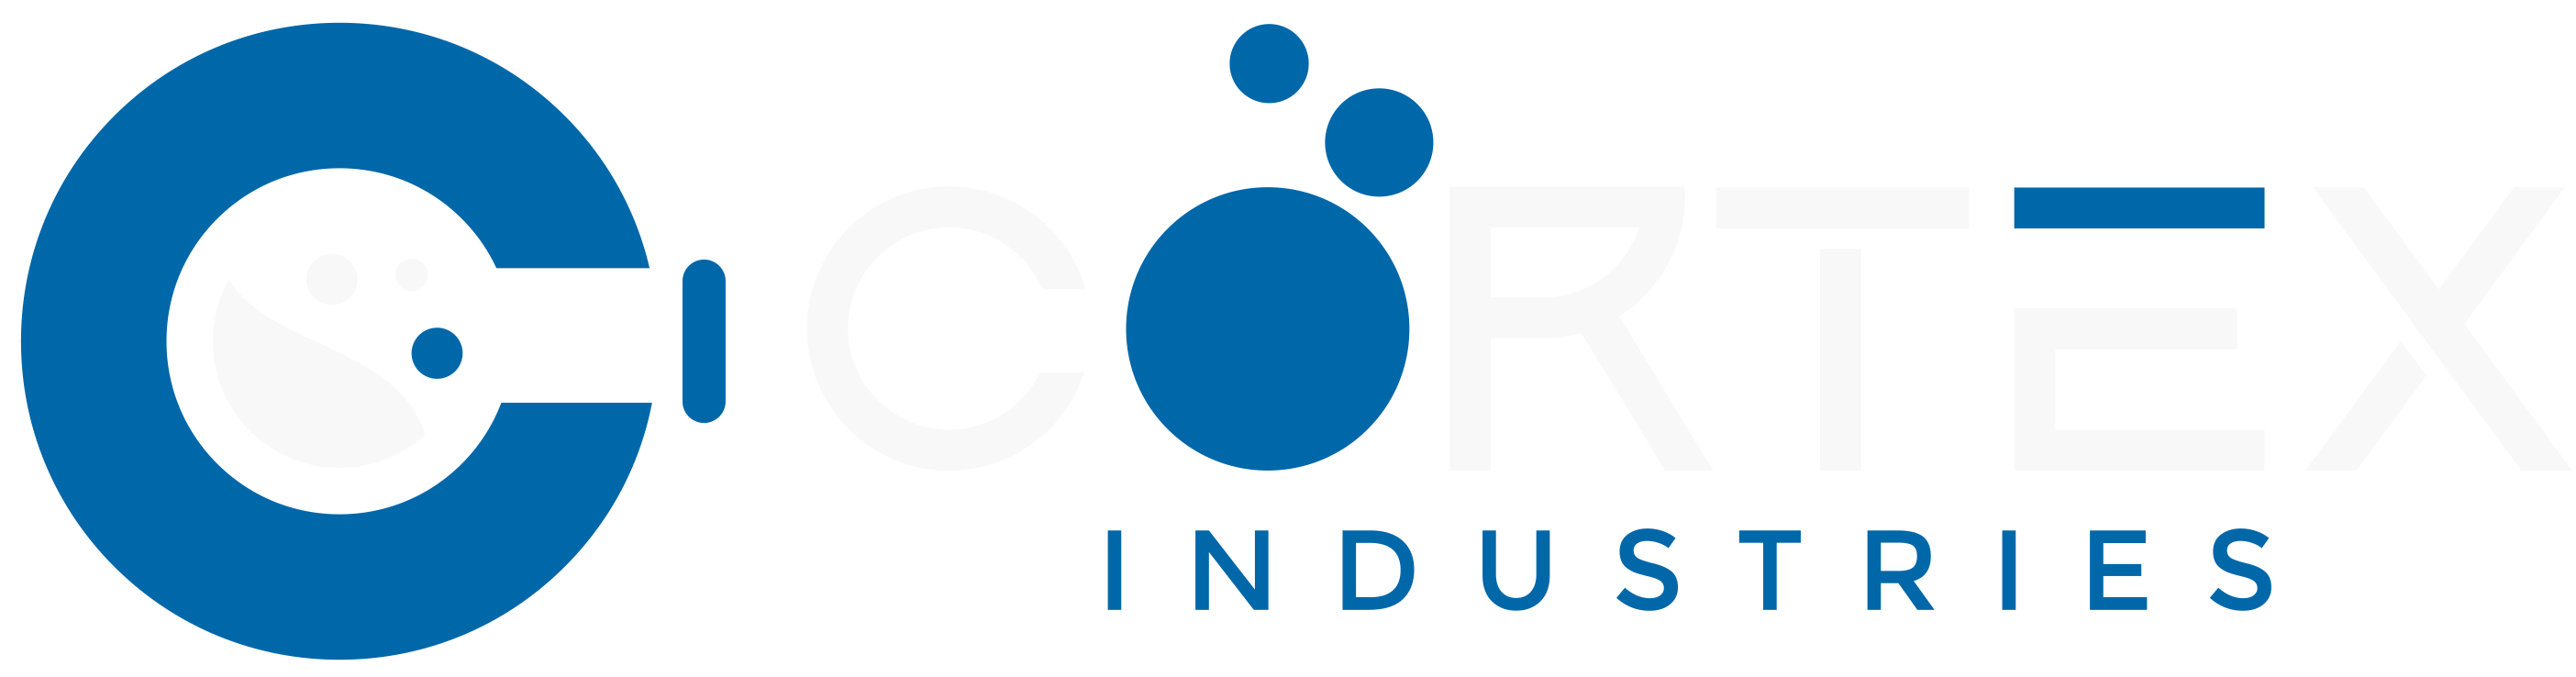 Cortex Industries